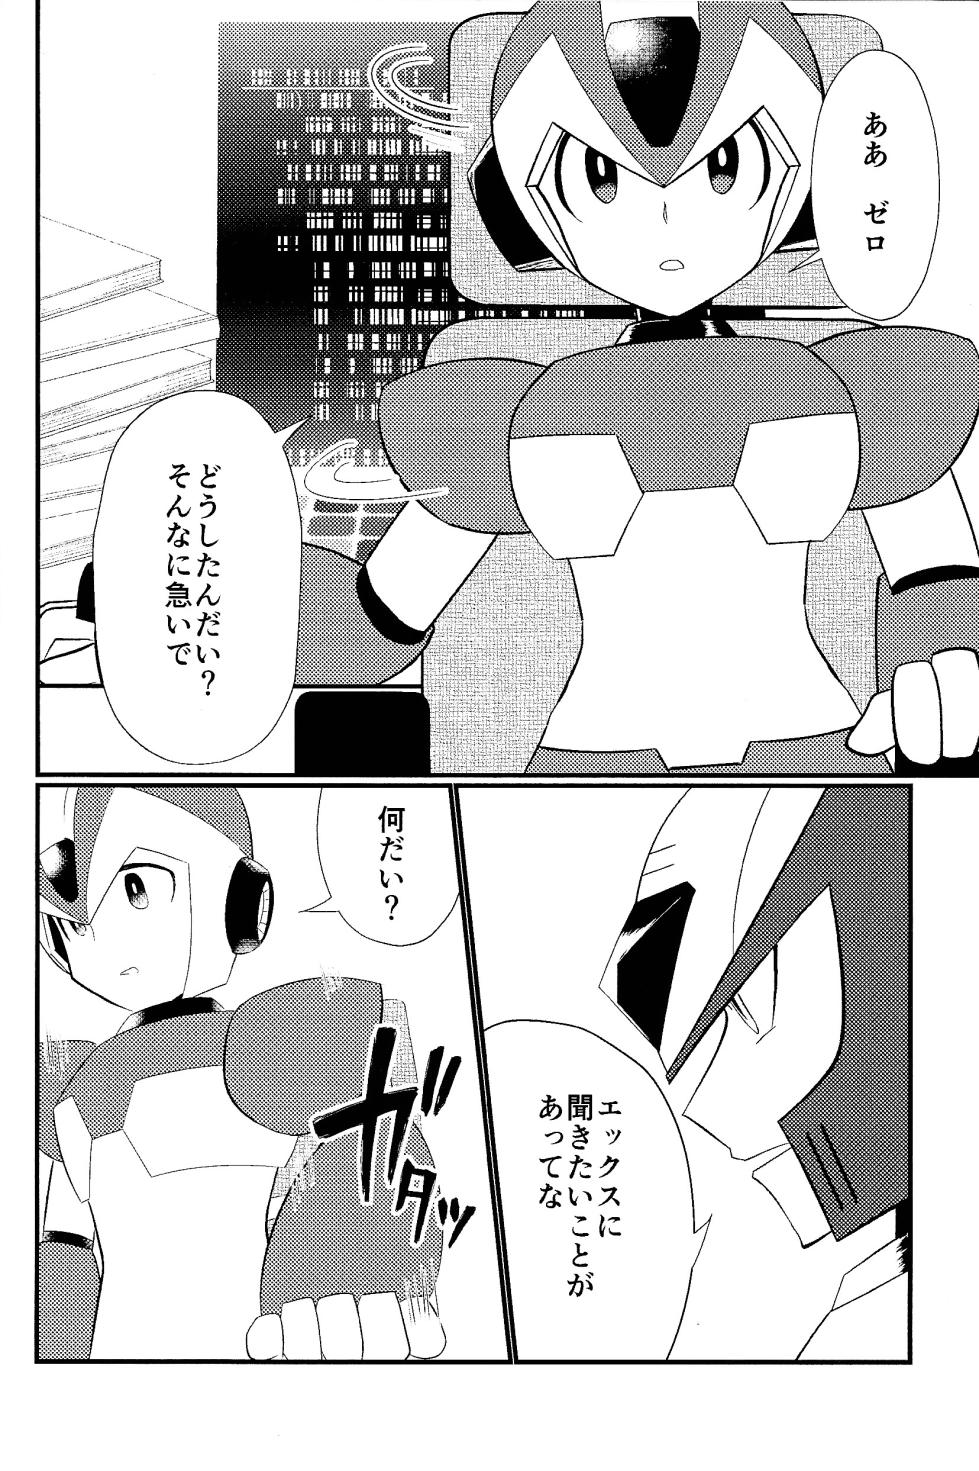 [Shiodome (Jisupeke)] Ore wa kimi no te de Hna koto o shite shimatta!!! (Mega Man X) - Page 8